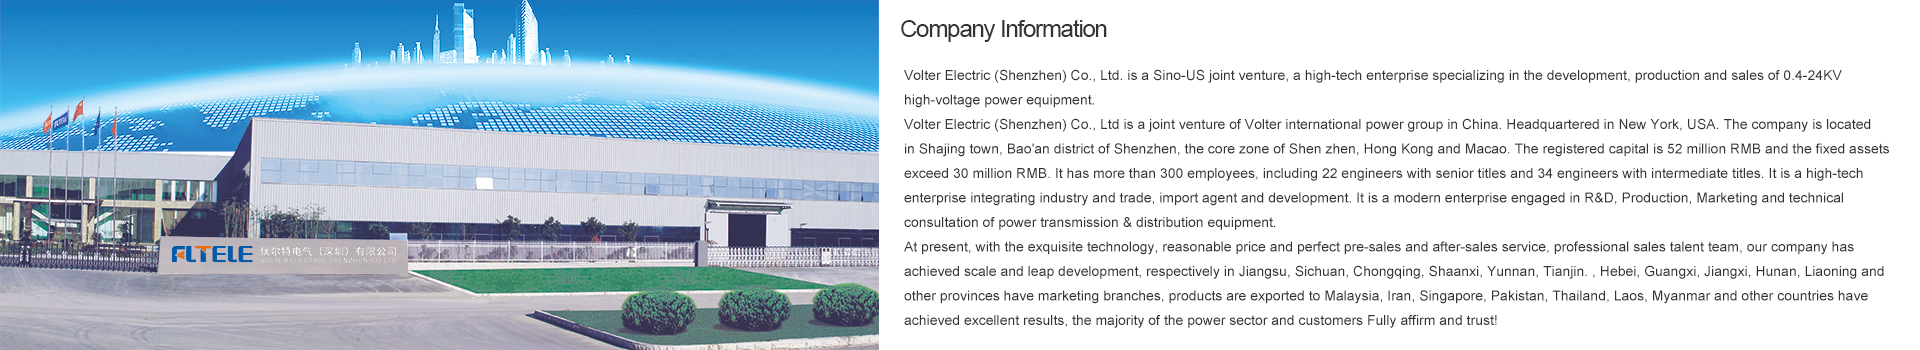 Volter Electric (Shenzhen) Co., Ltd